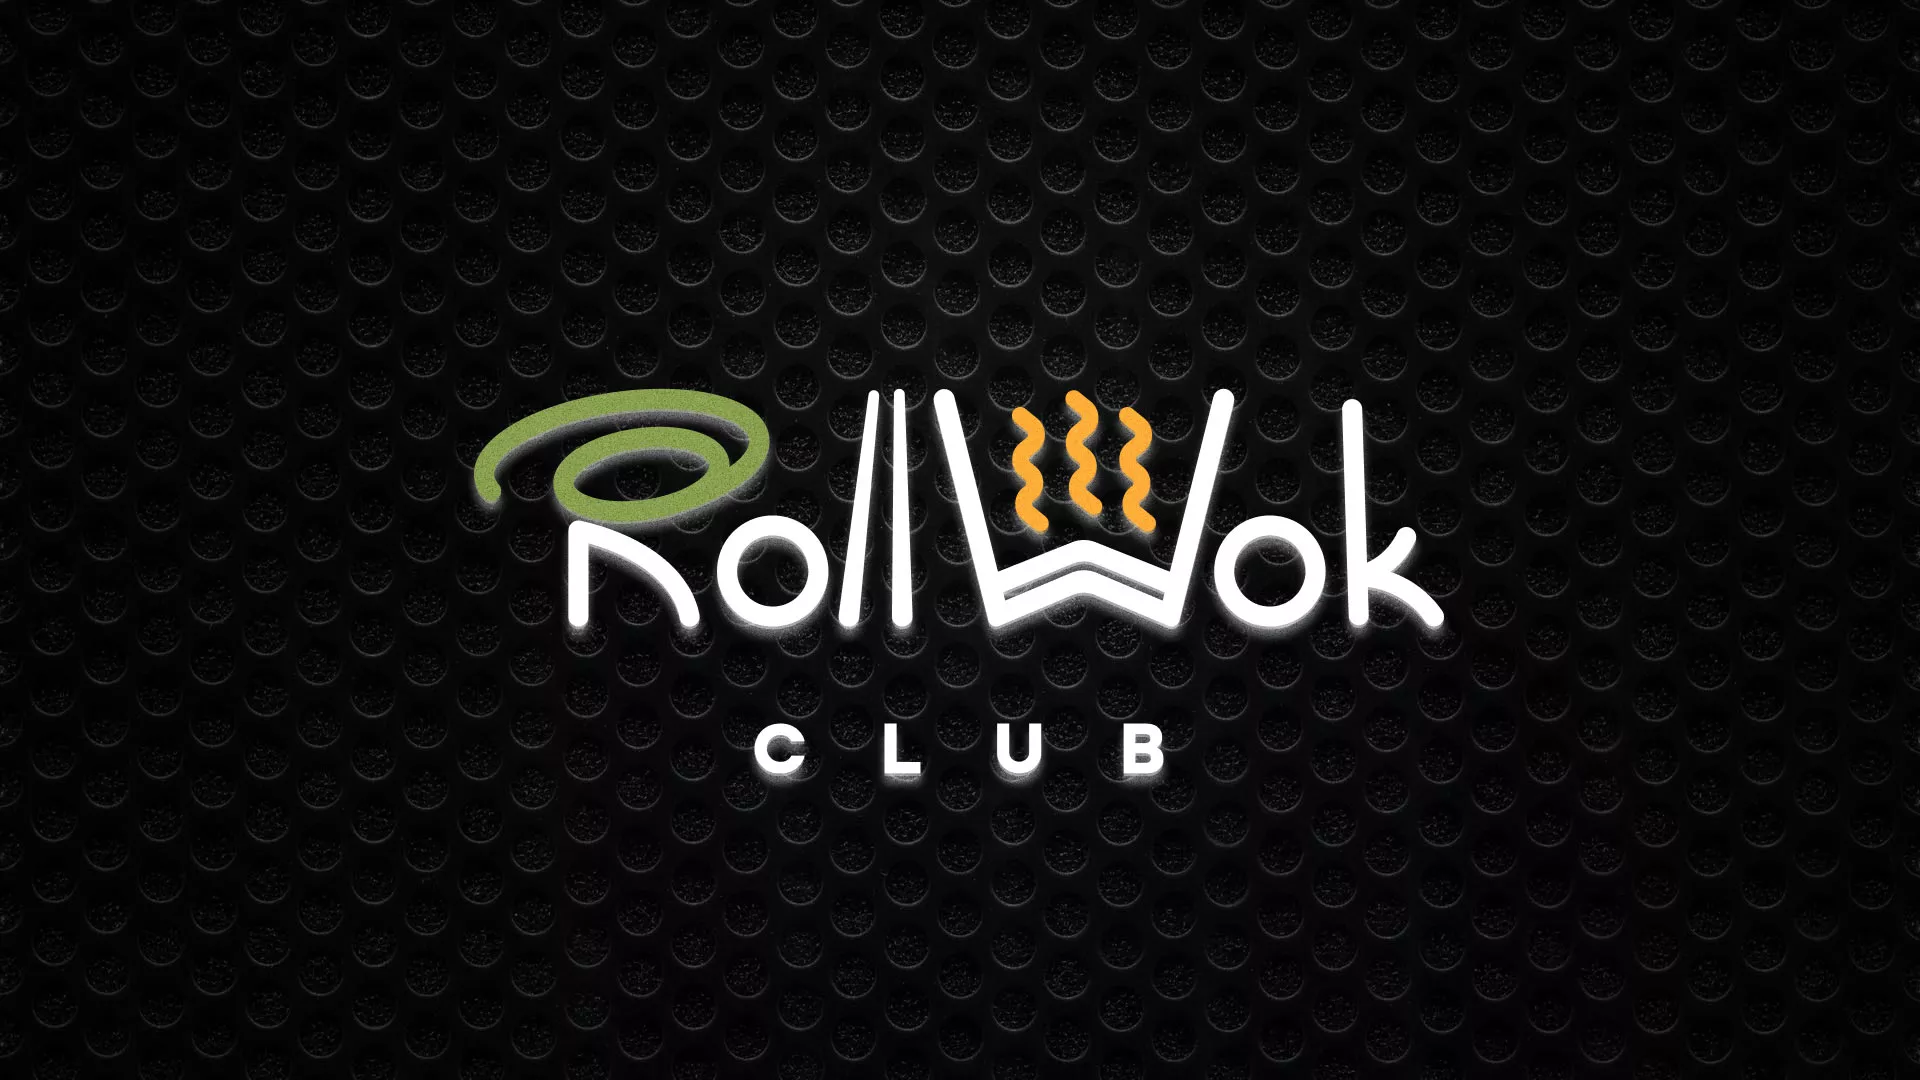 Брендирование торговых точек суши-бара «Roll Wok Club» в Бологом